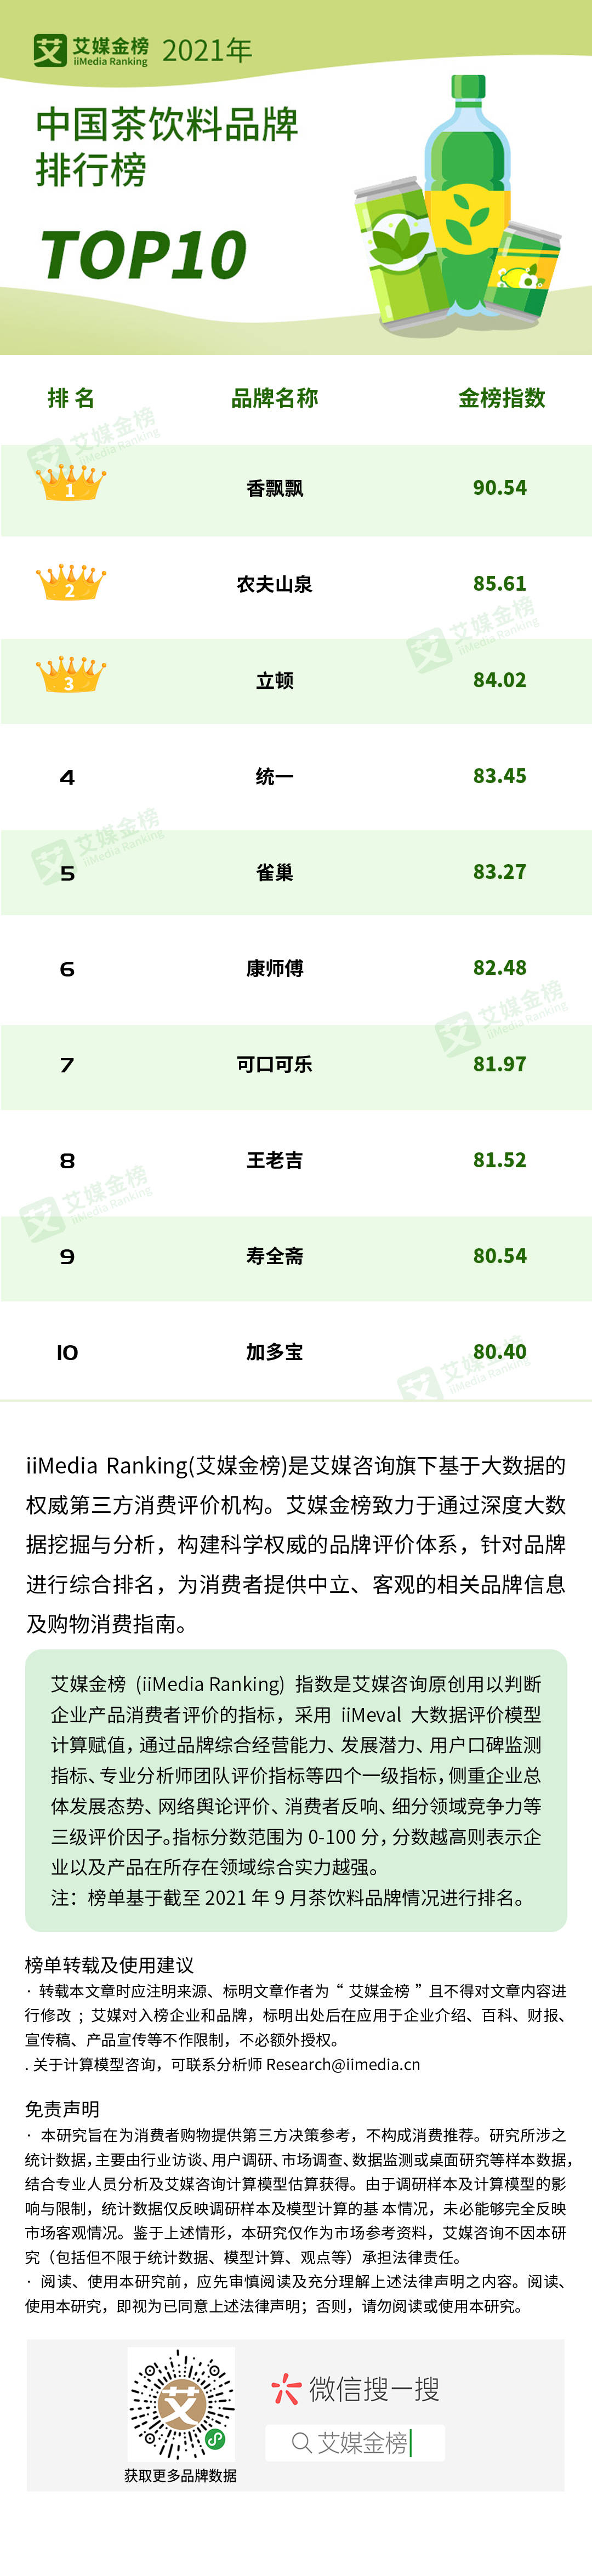 凉茶品牌排行榜_艾媒金榜|2021年中国茶饮料品牌排行榜Top10